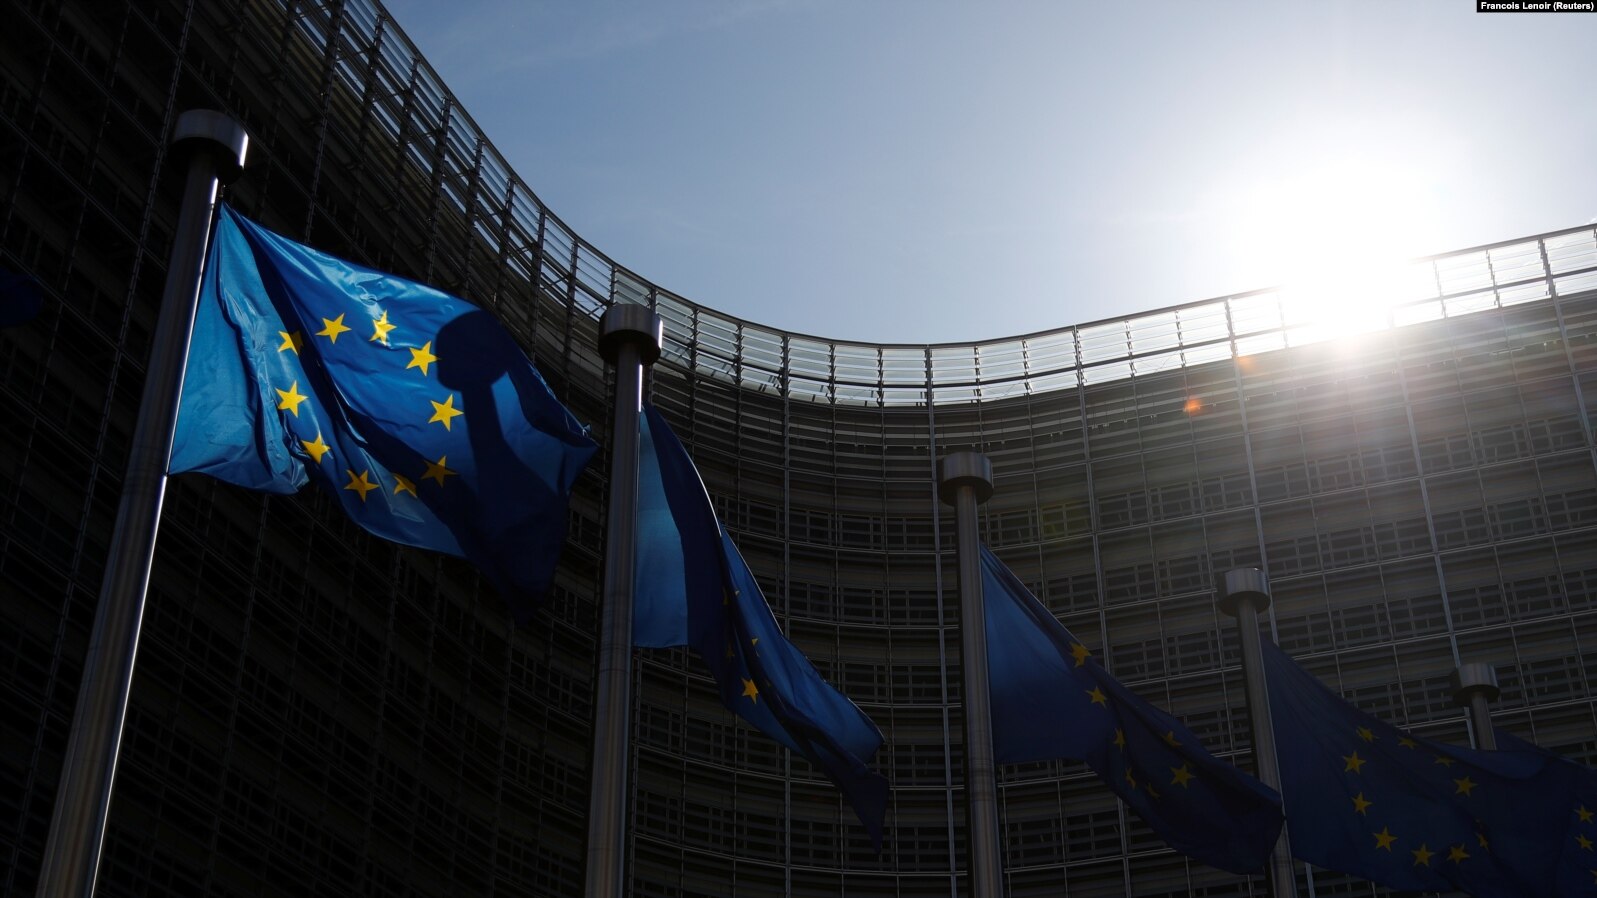 Flamuj të Bashkimit Evropian të vendosur pranë ndërtesës së Komisionit Evropian.